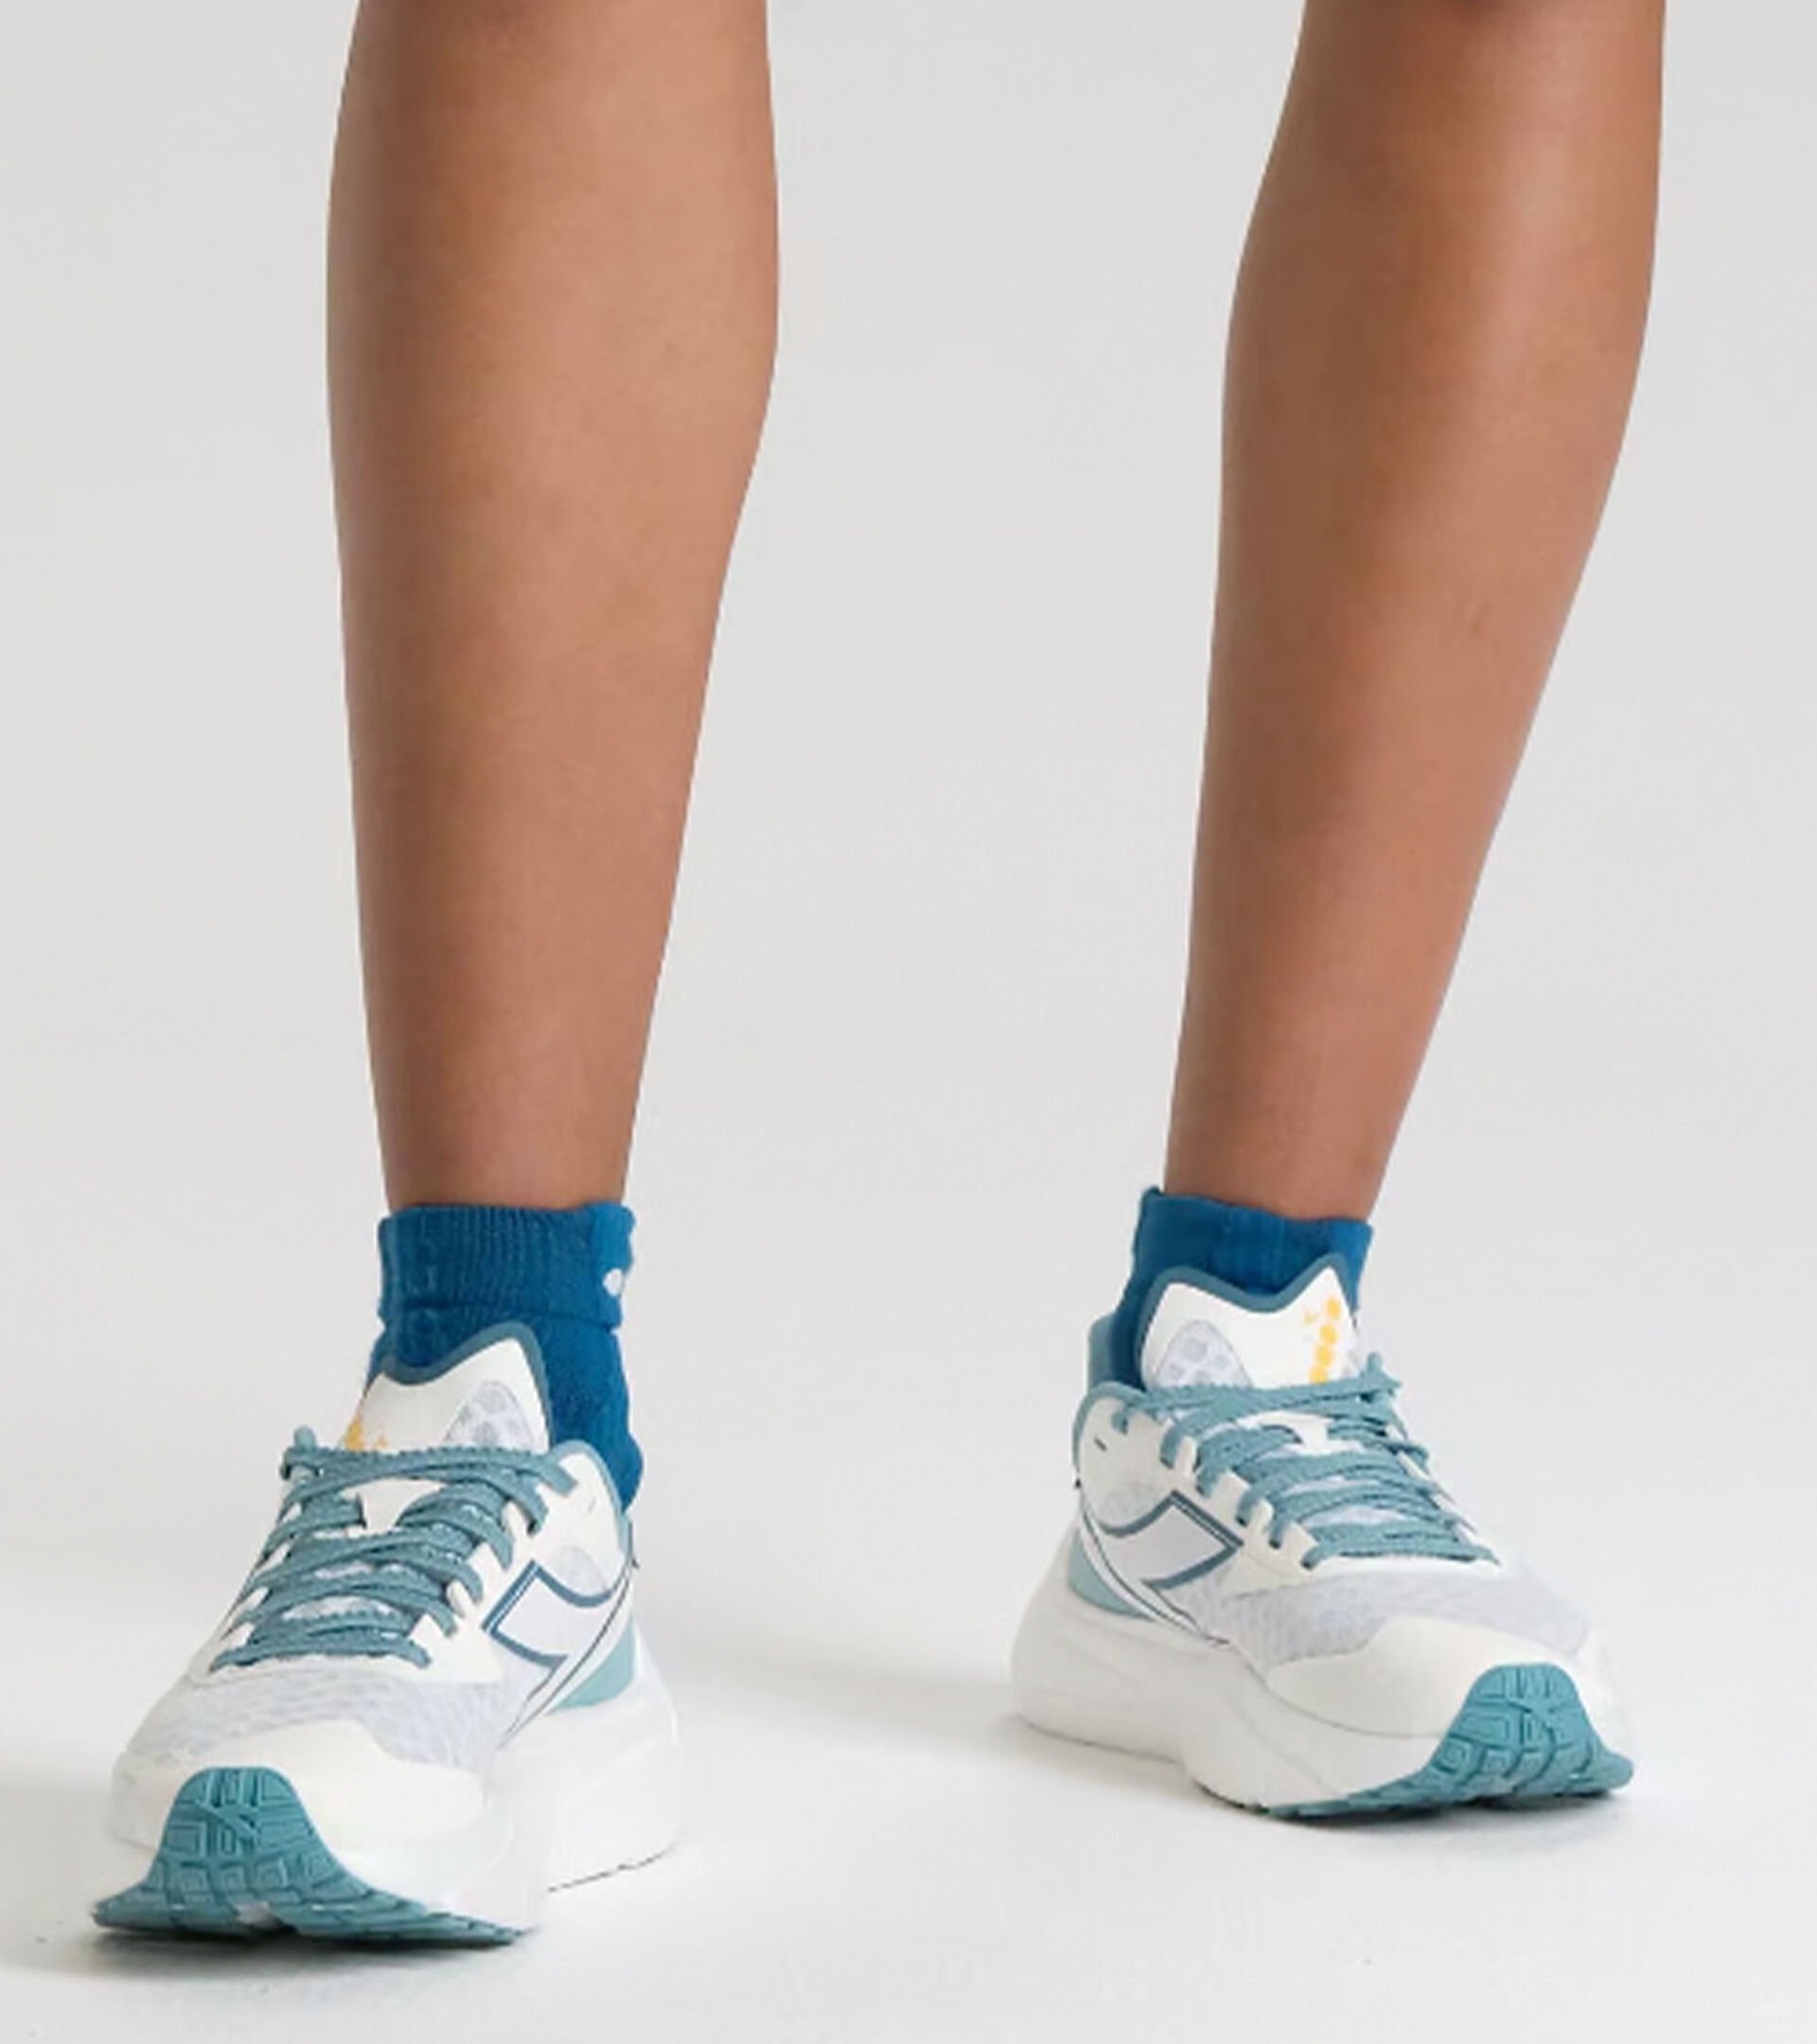 Chaussures de running - Légèreté et réactivité - Femme FREQUENZA W BLC/COLONIAL BL/TURQUOISE POUD - Diadora